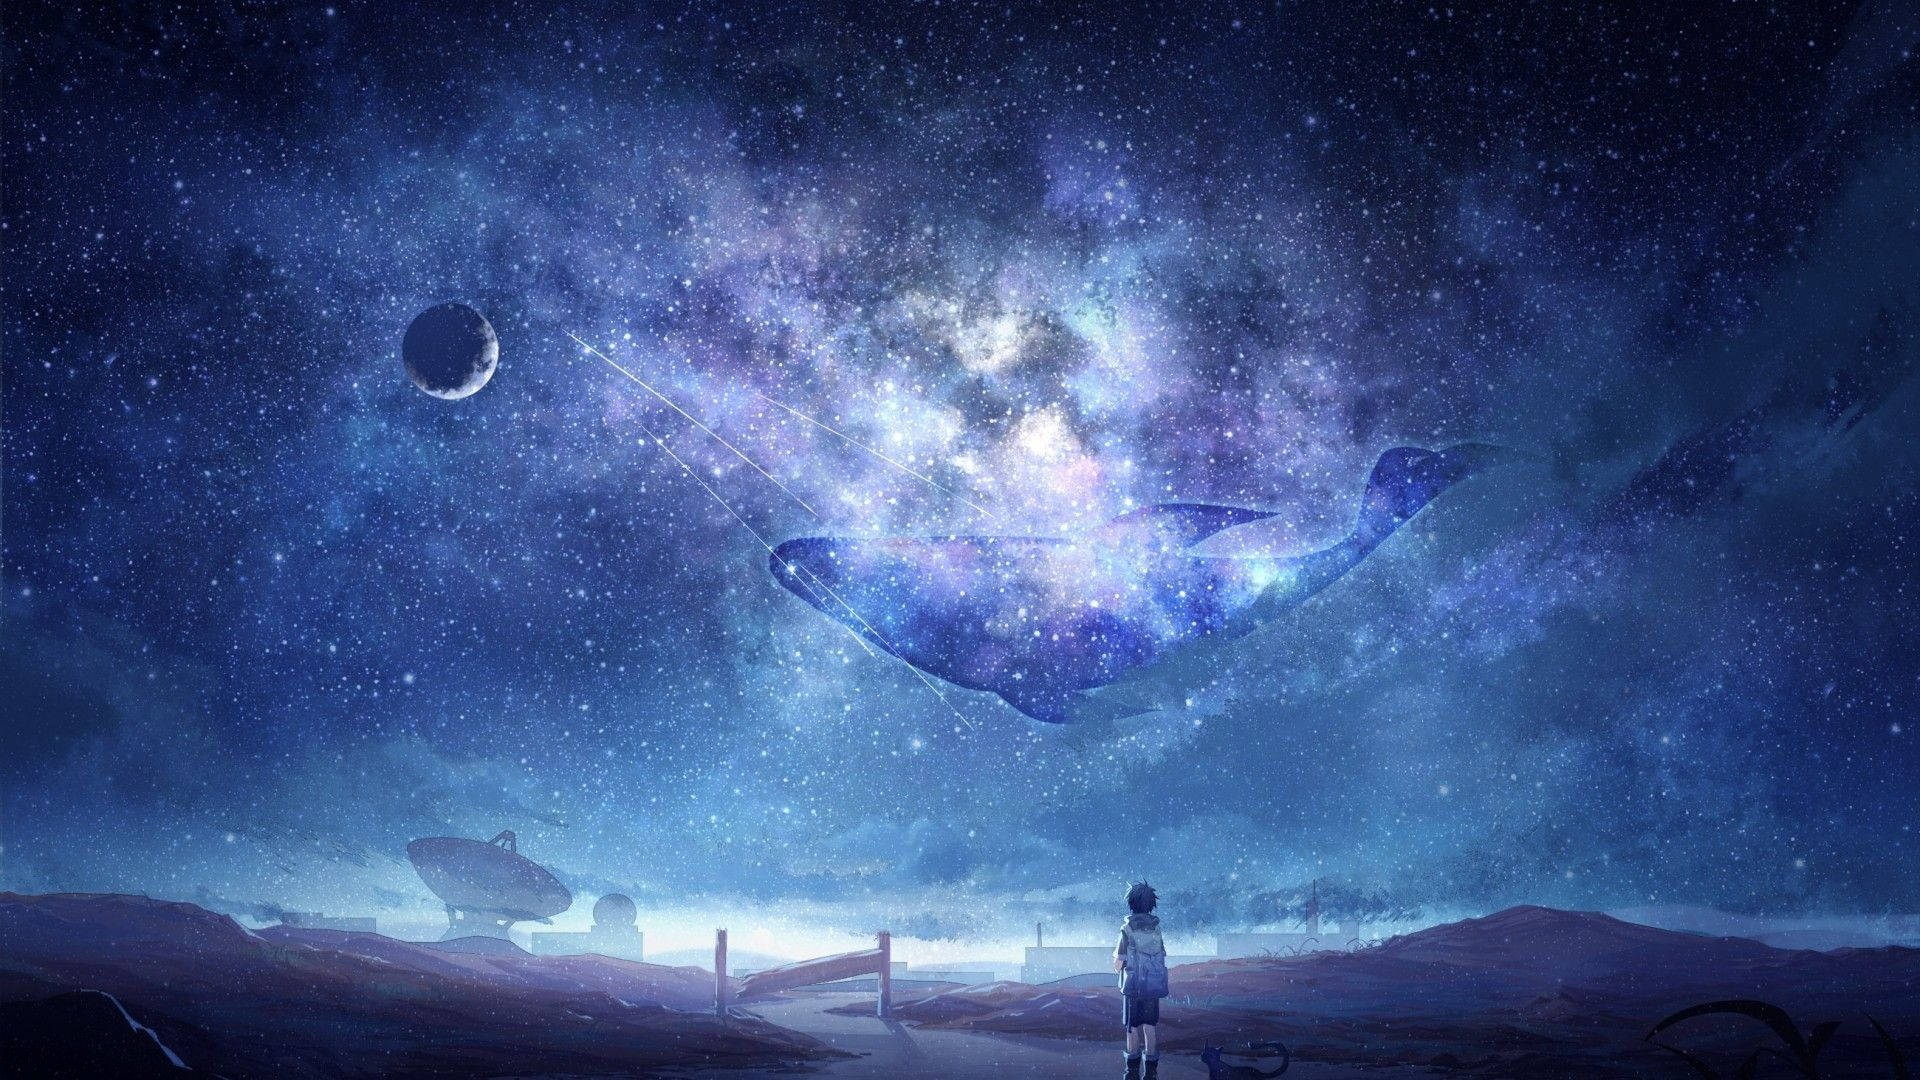 Anime Night Sky Wallpaper - hình nền anime đêm sao: Hình nền anime đêm sao sẽ đưa bạn vào một thế giới đầy mộng mơ và lãng mạn. Bạn sẽ thấy những nhân vật anime yêu thích của mình trông tuyệt vời khi xuất hiện trên nền trời đầy sao băng.